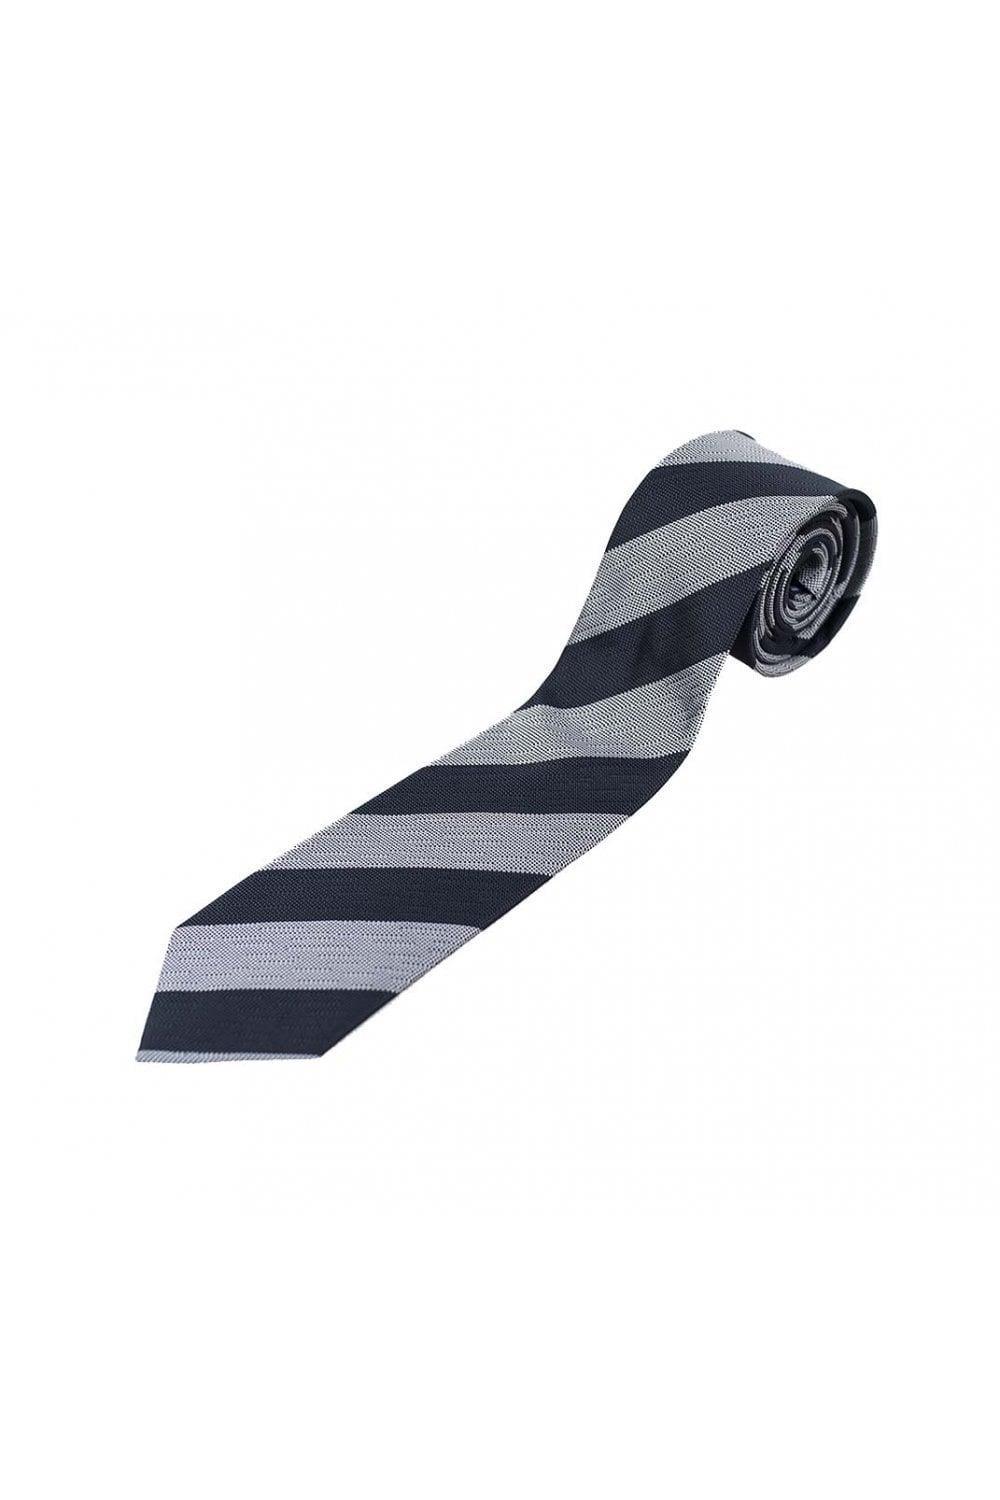 Self stripe grey/grey tie set